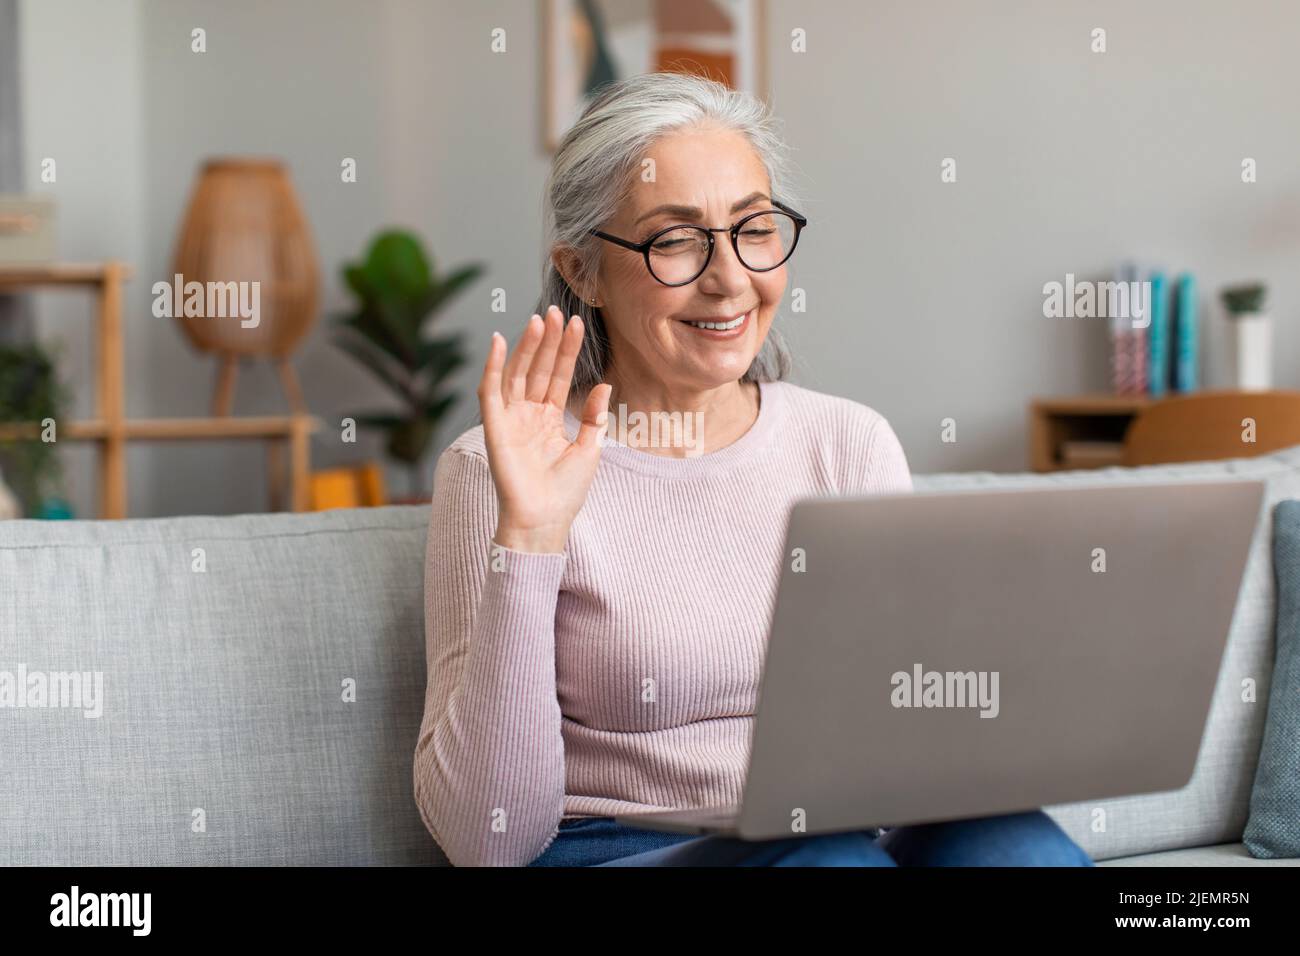 Contente européenne senior dame avec des cheveux gris dans les lunettes vagues sa main, regarde l'ordinateur dans l'intérieur de la salle de séjour Banque D'Images